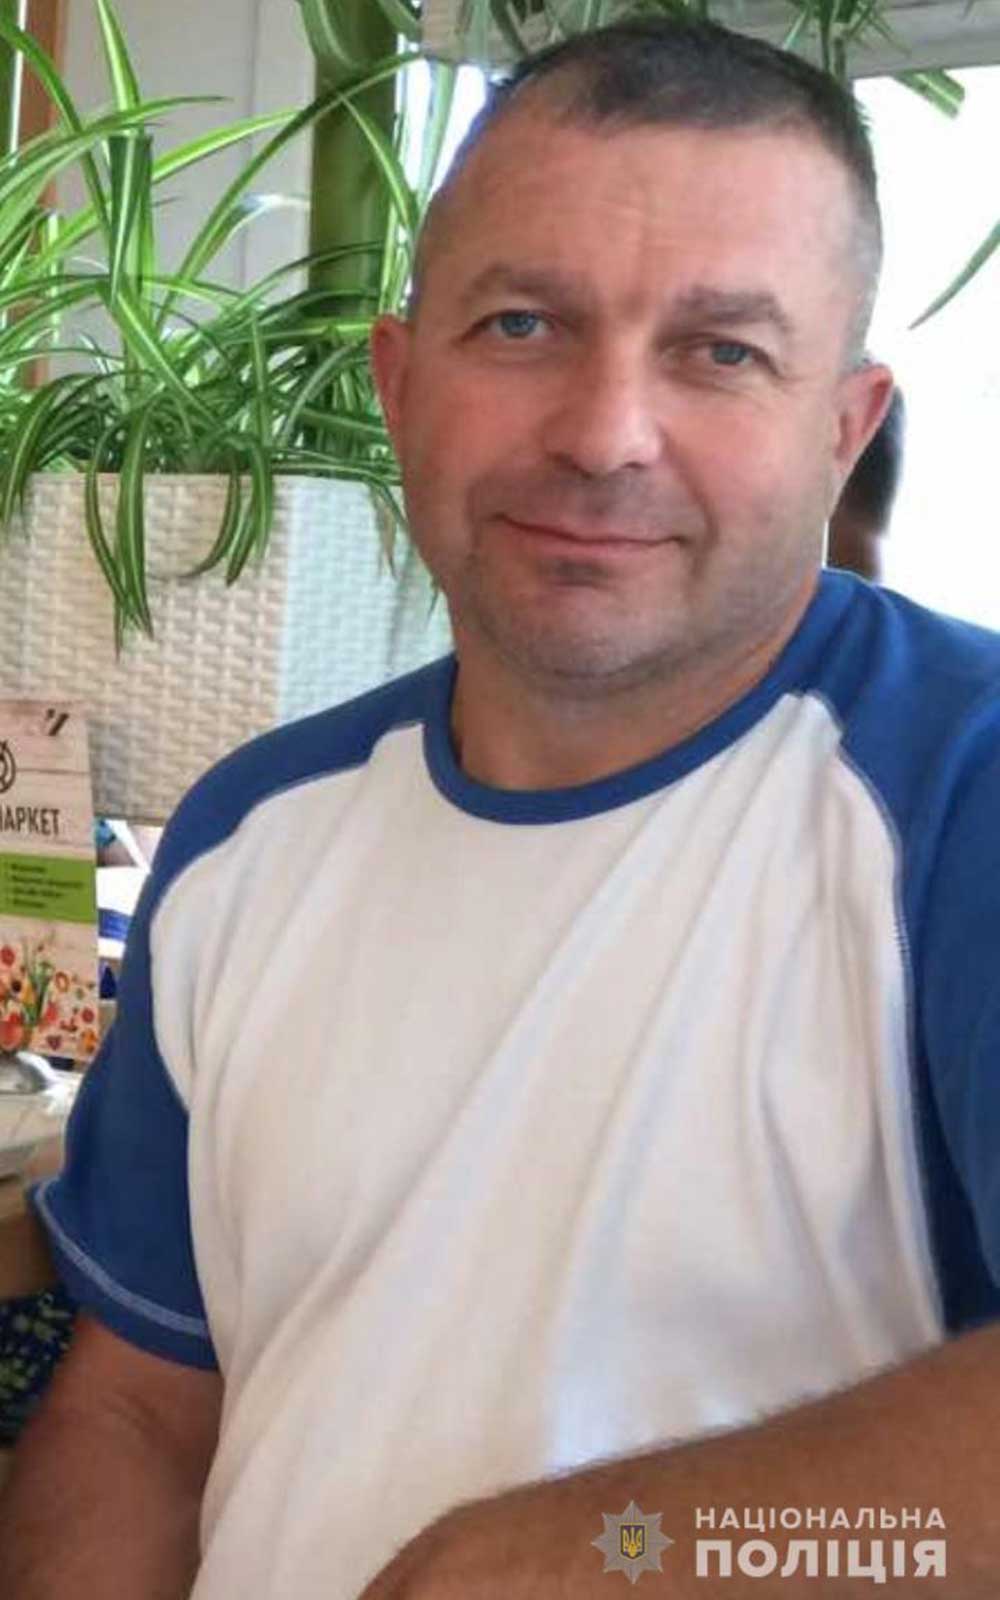 Поліція розшукує зниклого вінничанина Володимира Карпова